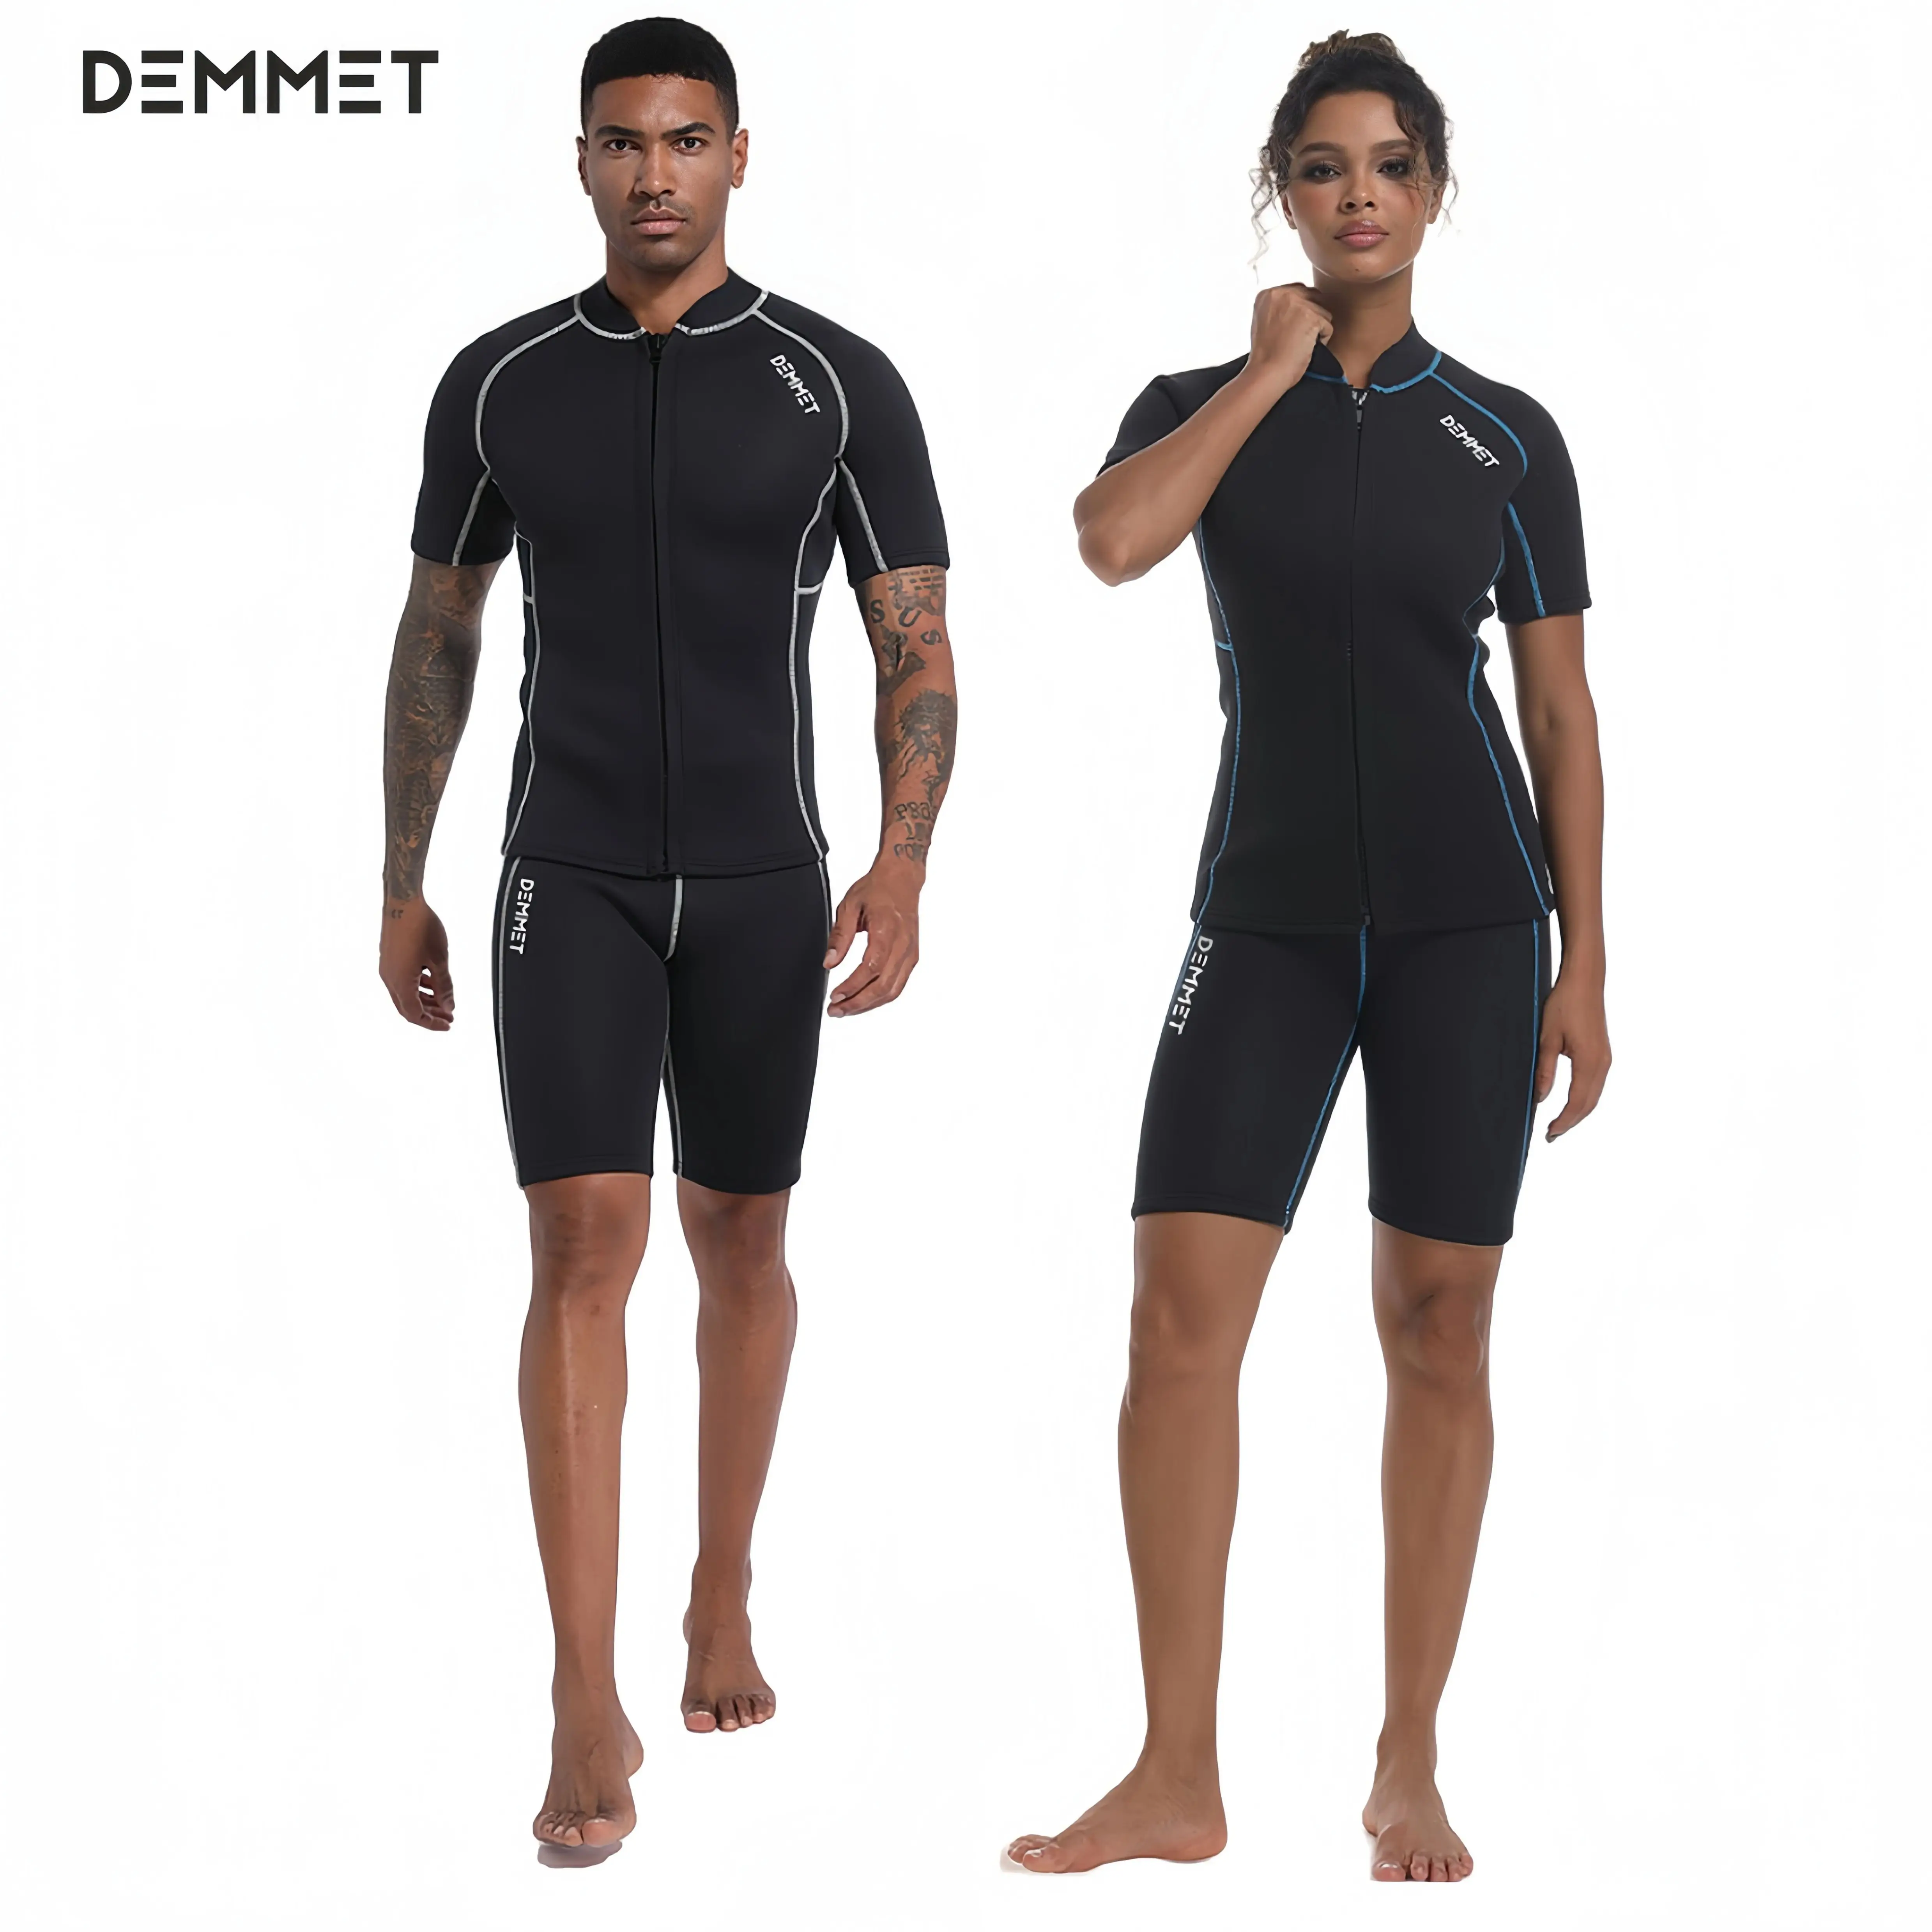 

DEMMET короткий костюм для дайвинга мужской неопреновый костюм для дайвинга с разрезом женский влажный костюм с передней молнией для подводной охоты плавания серфинга купальники 1,5 мм/3 мм